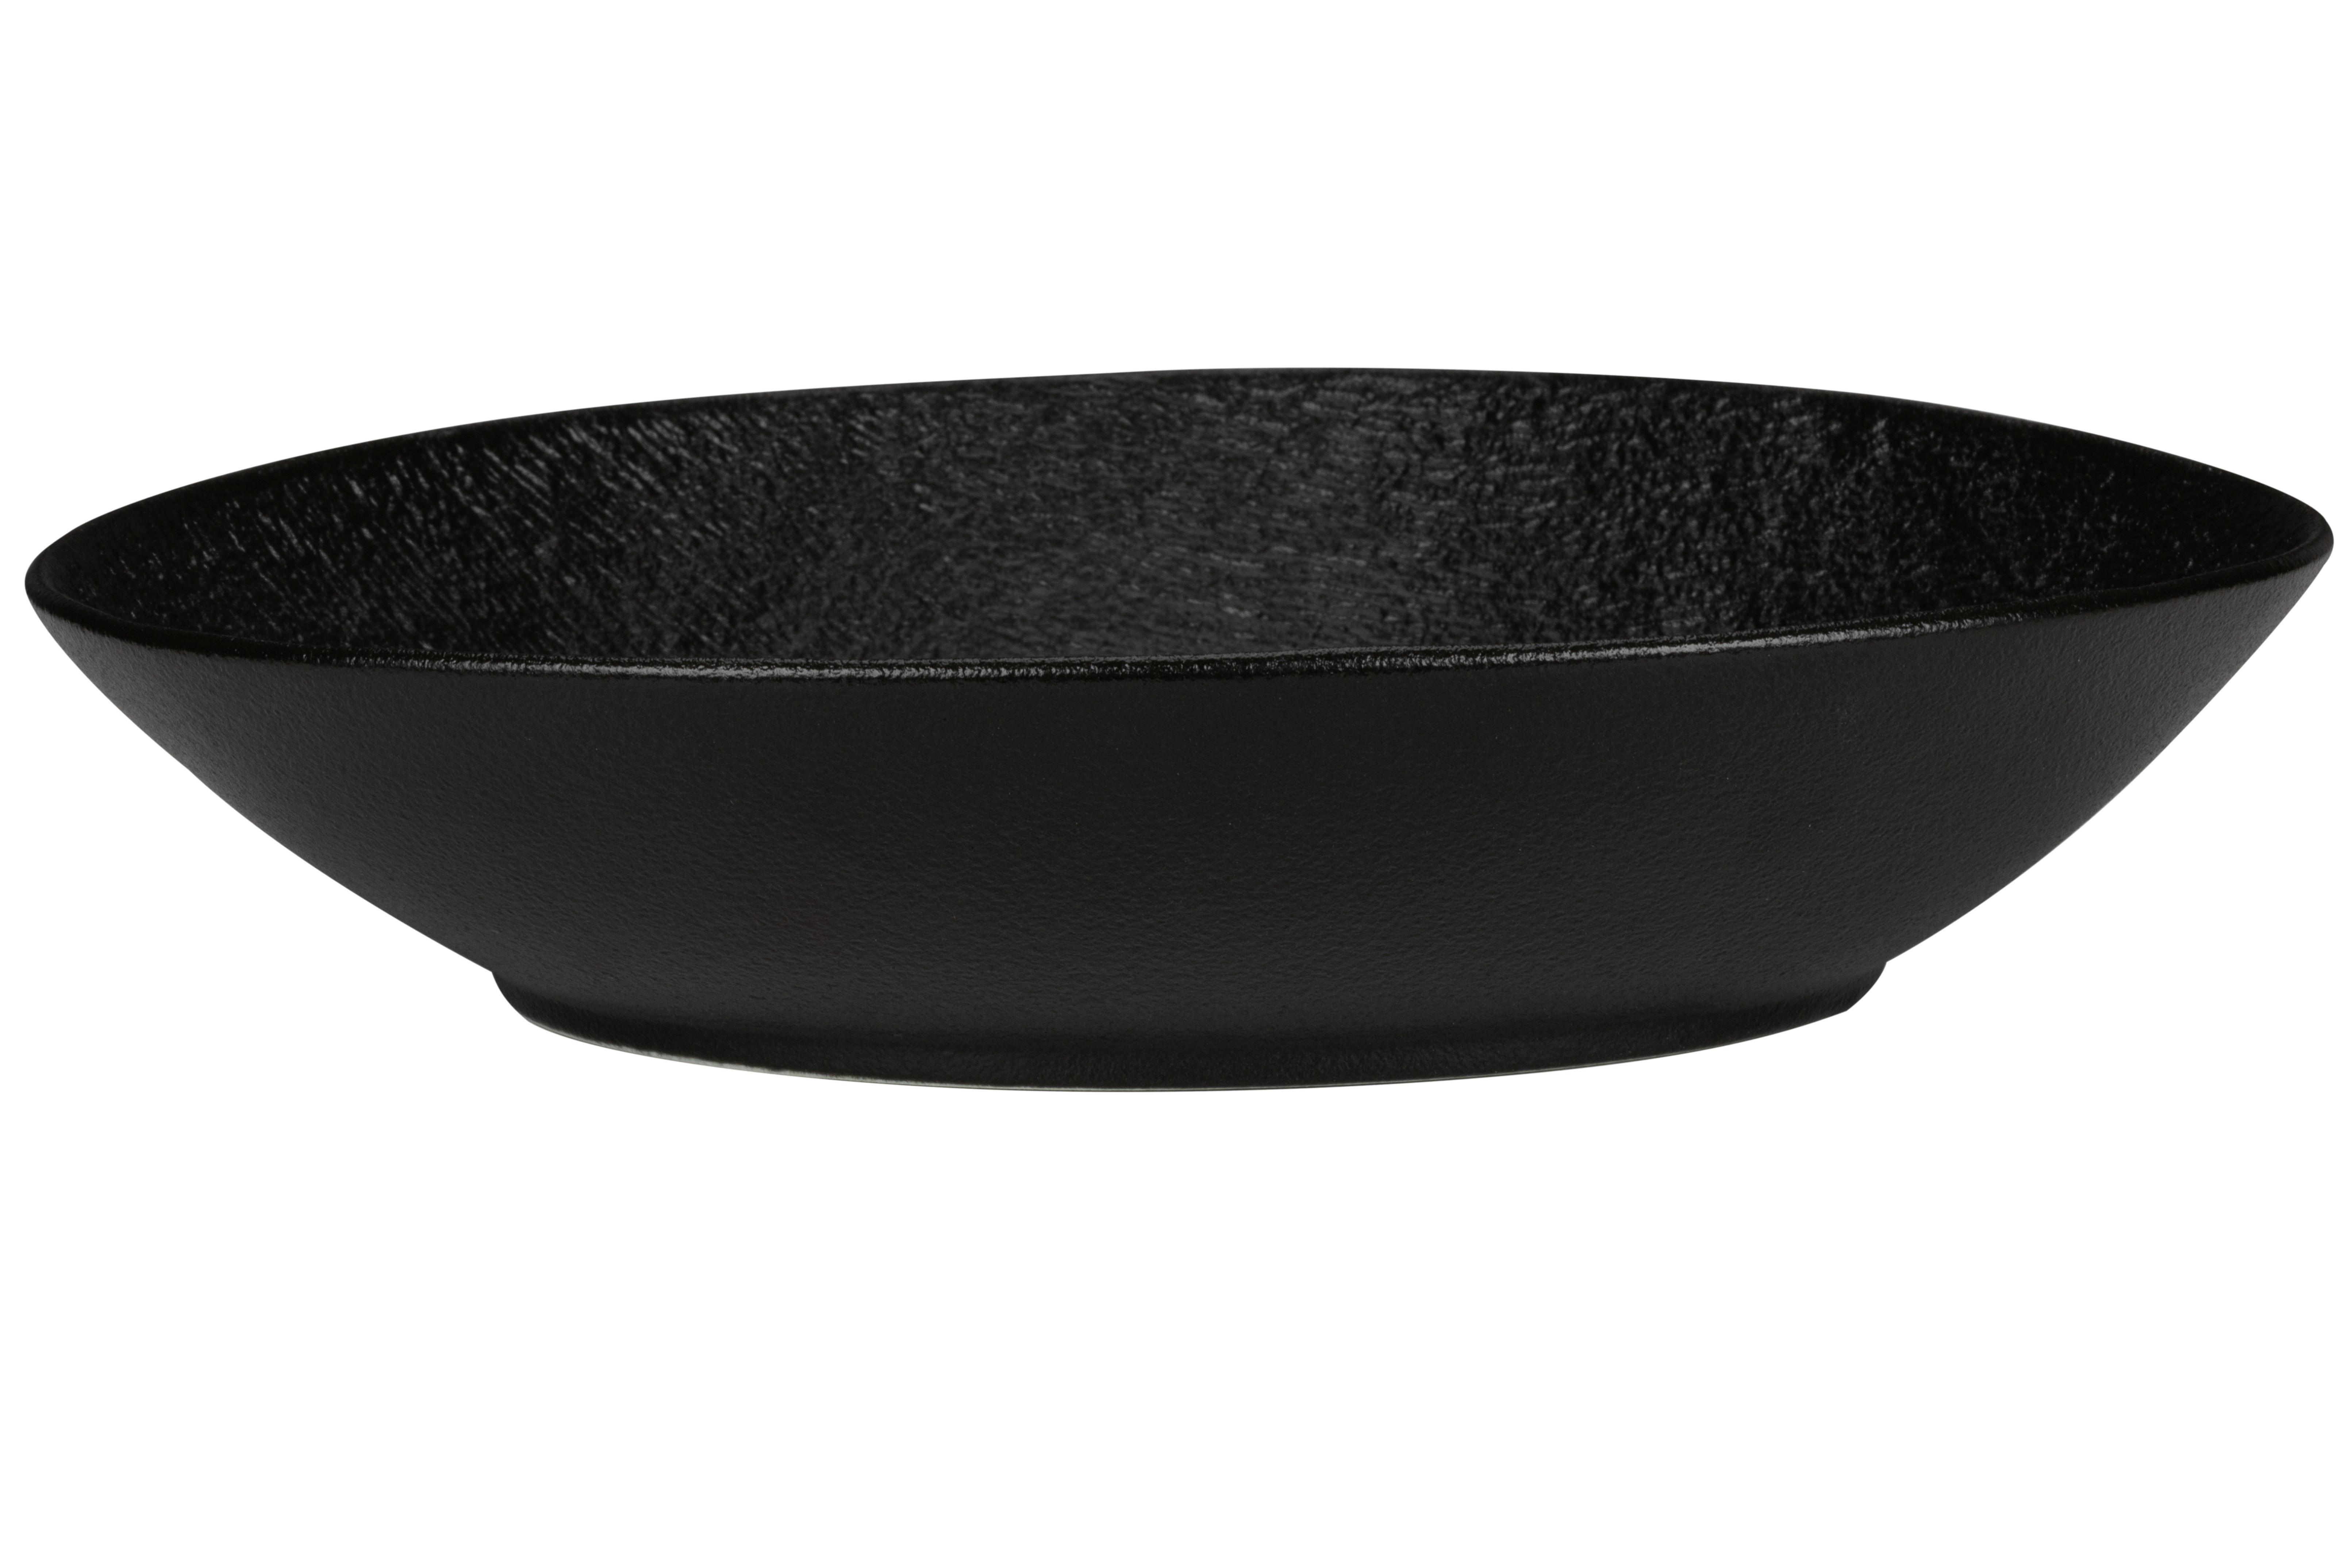 Talíř Na Těstoviny Haruki - černá, Moderní, keramika (30,9/27,8/5,8cm) - Premium Living